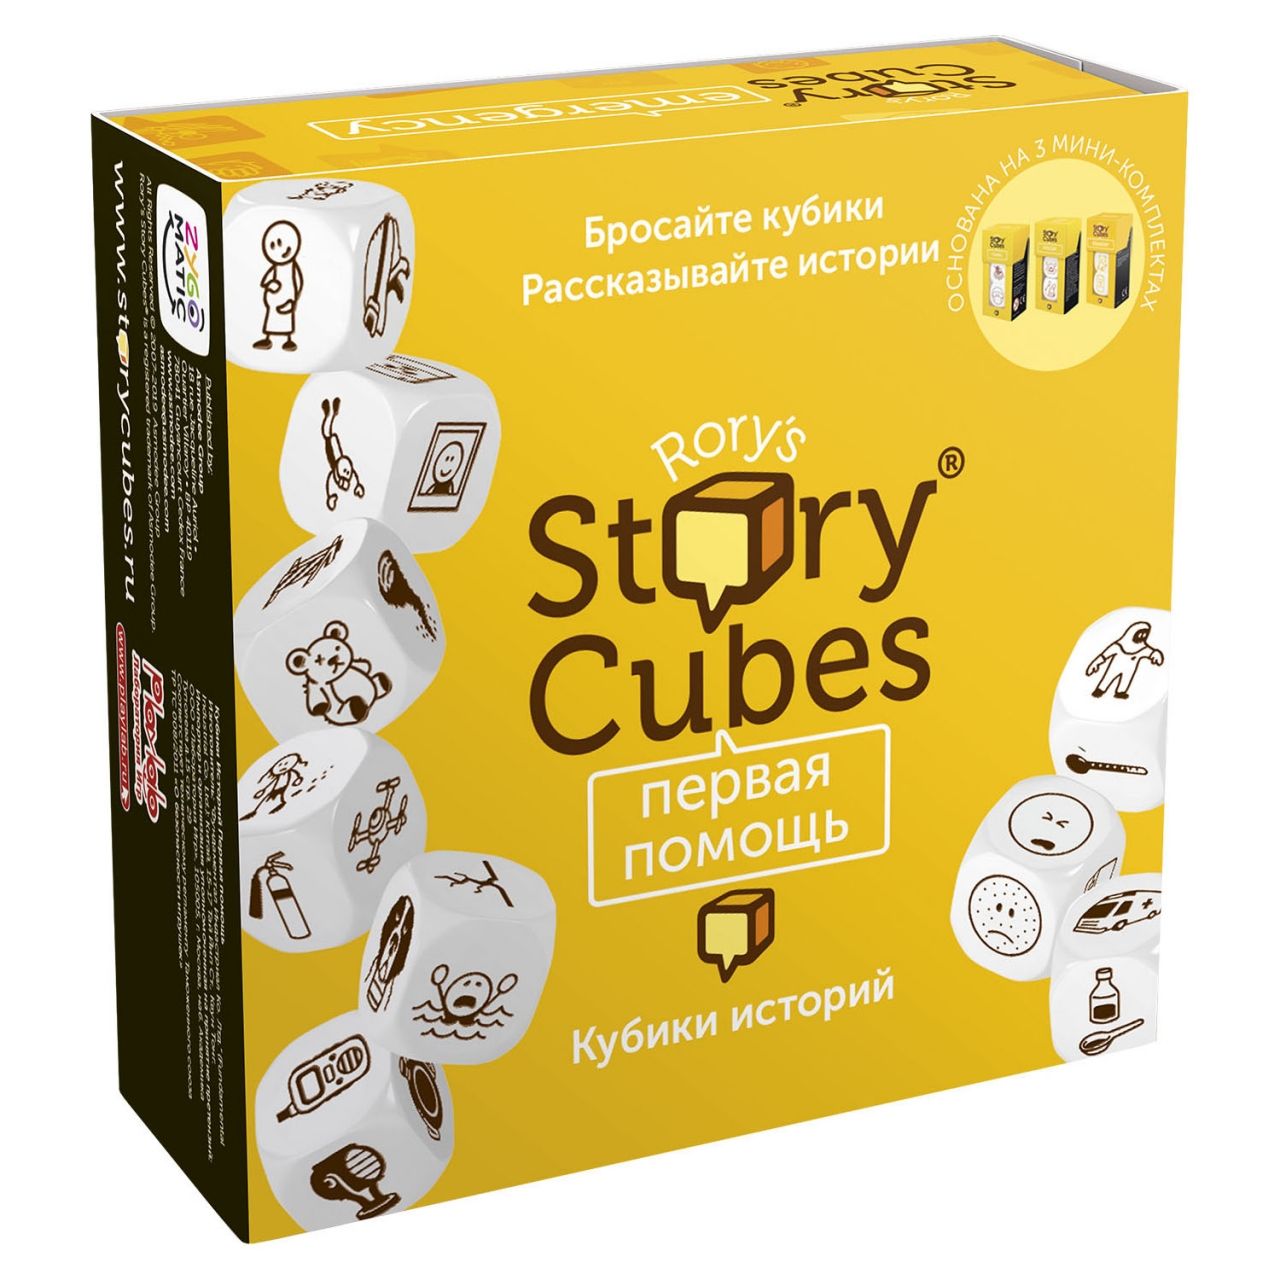 Настольная игра RORYS STORY CUBES RSC32 кубики историй Первая помощь настольная игра кубики историй